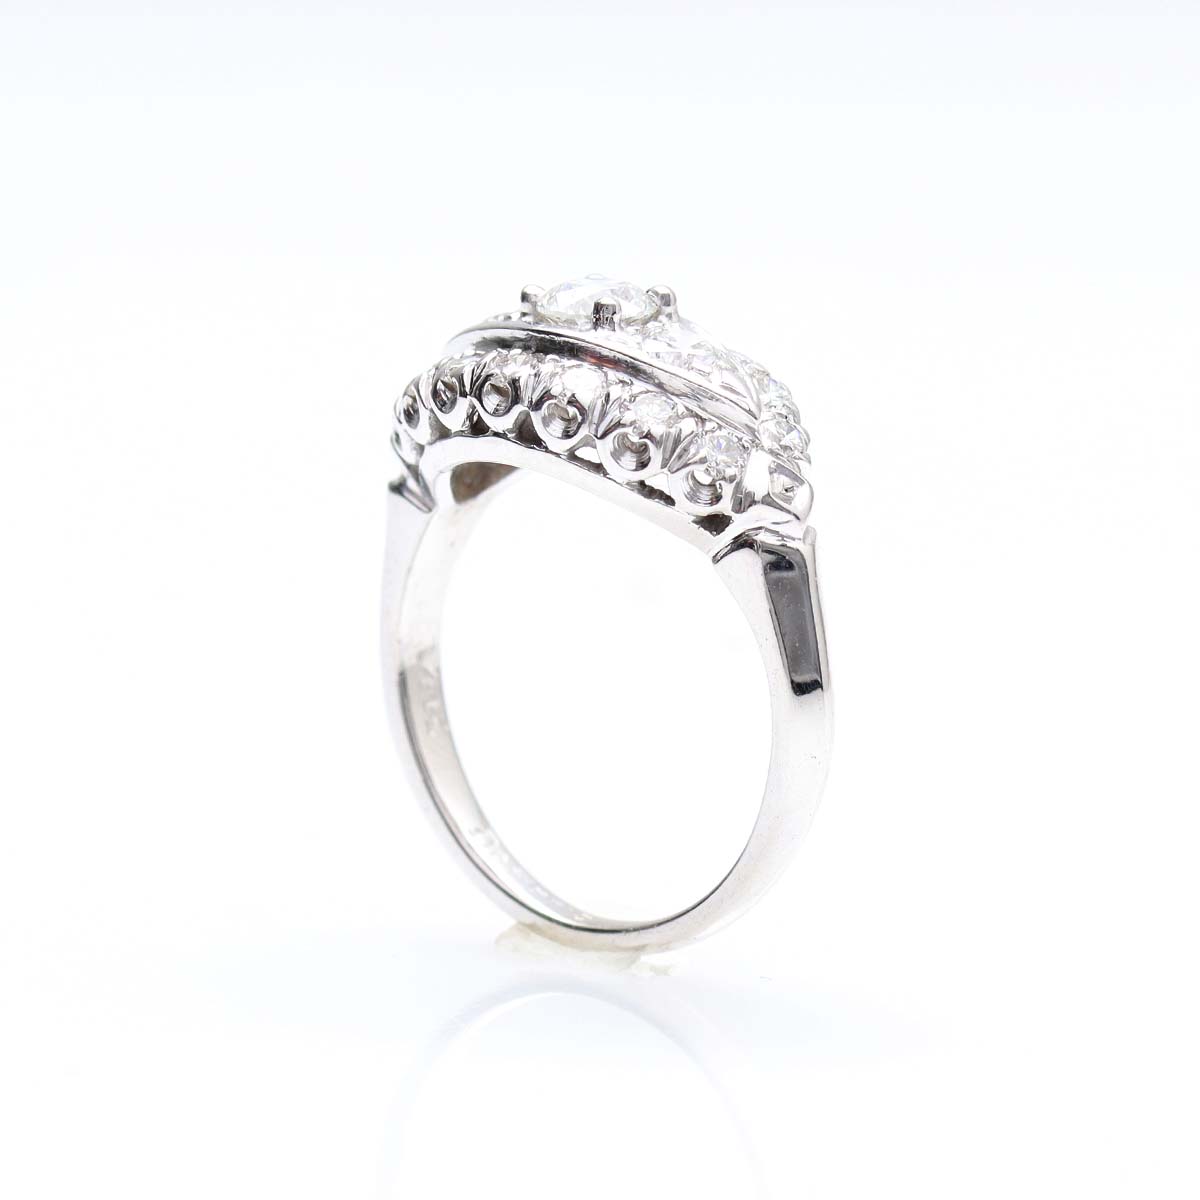 Circa 1950s Diamond Ring #VR150910-02 - Leigh Jay & Co